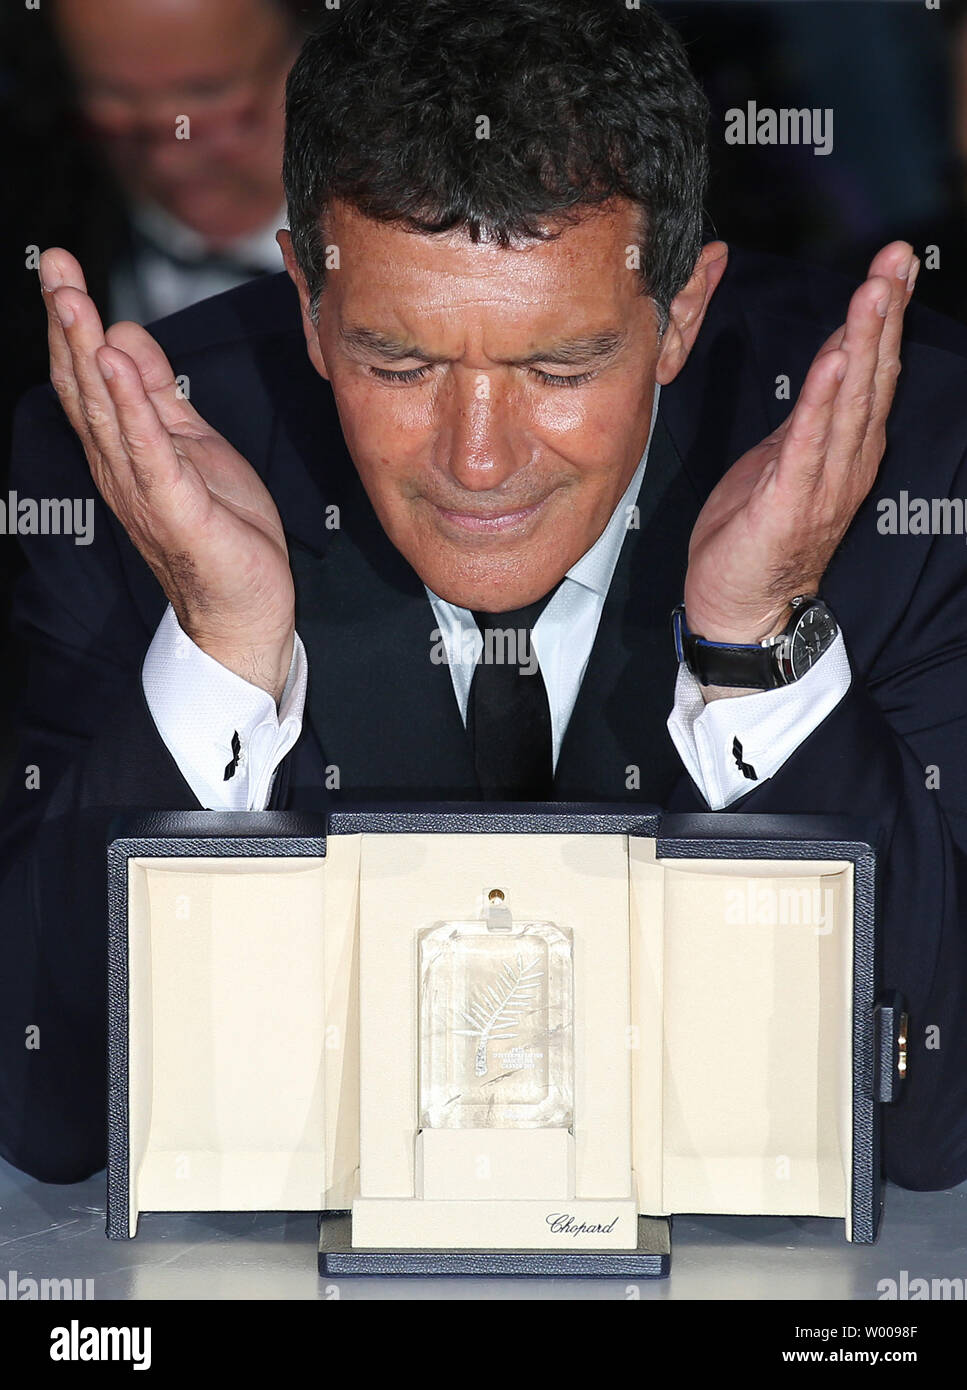 L'acteur Antonio Banderas arrive à la bourse photocall après avoir reçu le prix "Meilleur acteur" pour le film 'La douleur et la gloire" au cours de la 20e Congrès International du Film de Cannes à Cannes, France le 25 mai 2019. Photo de David Silpa/UPI Banque D'Images